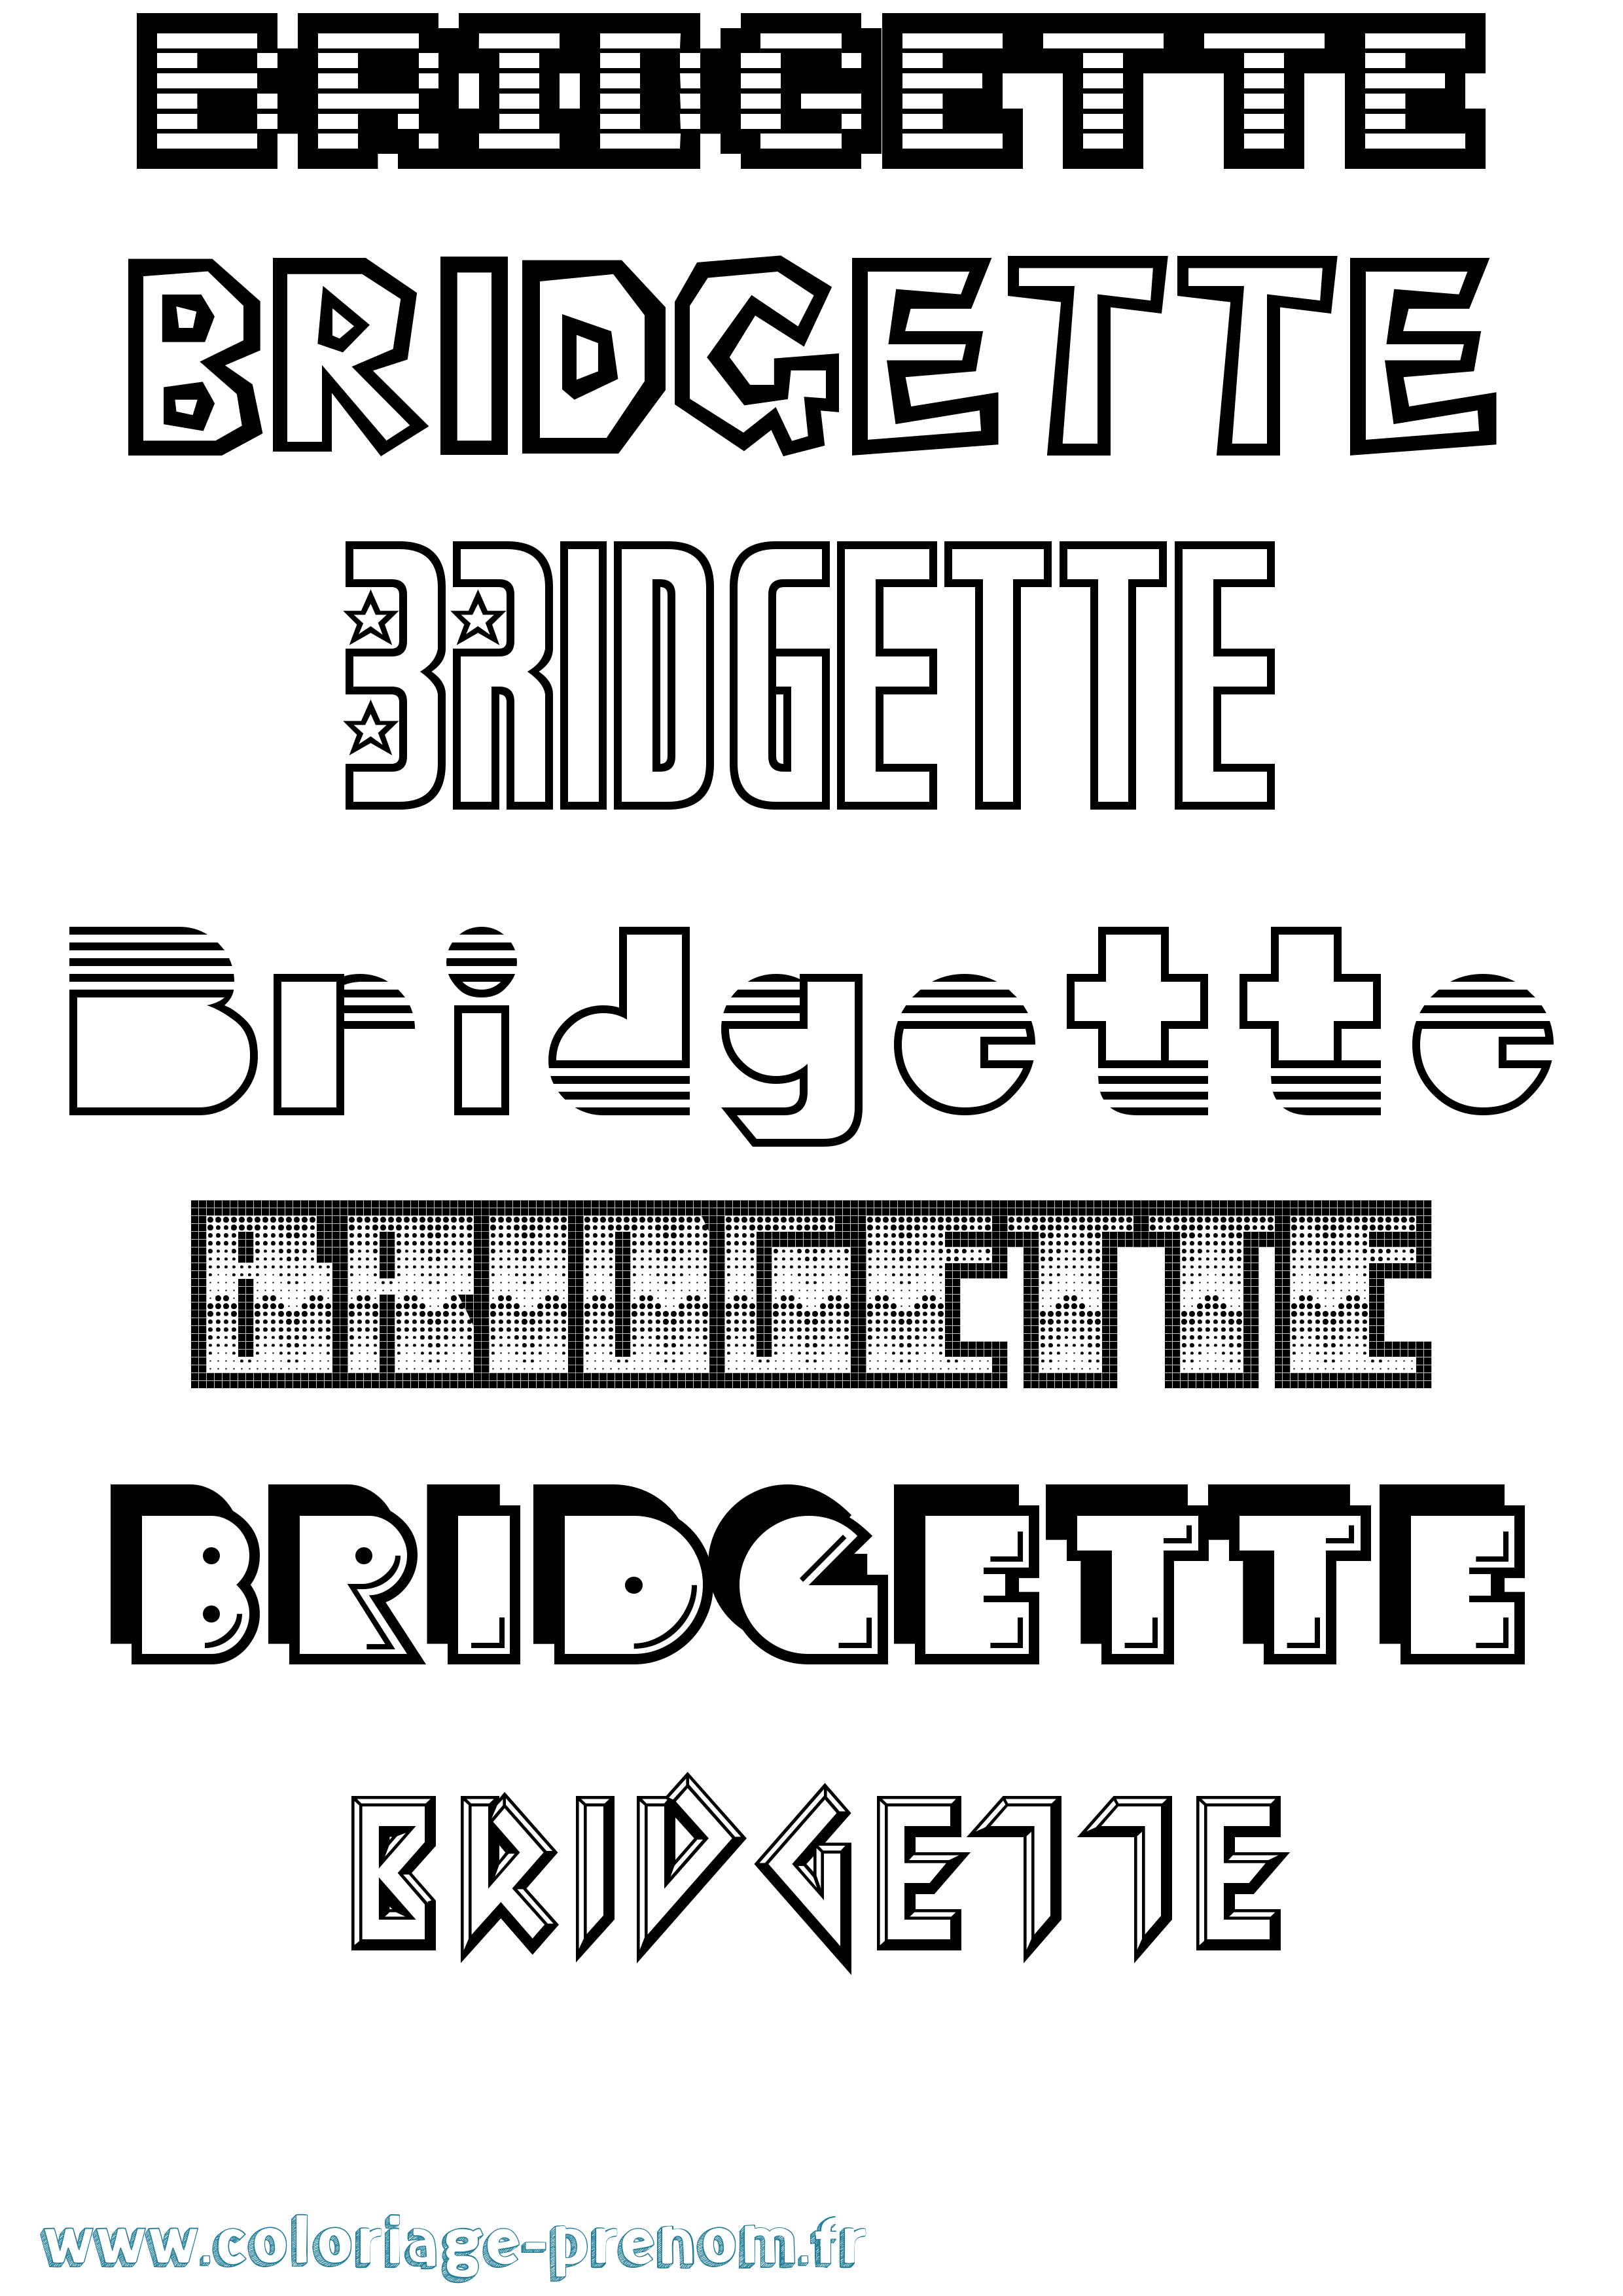 Coloriage du prénom Bridgette : à Imprimer ou Télécharger facilement